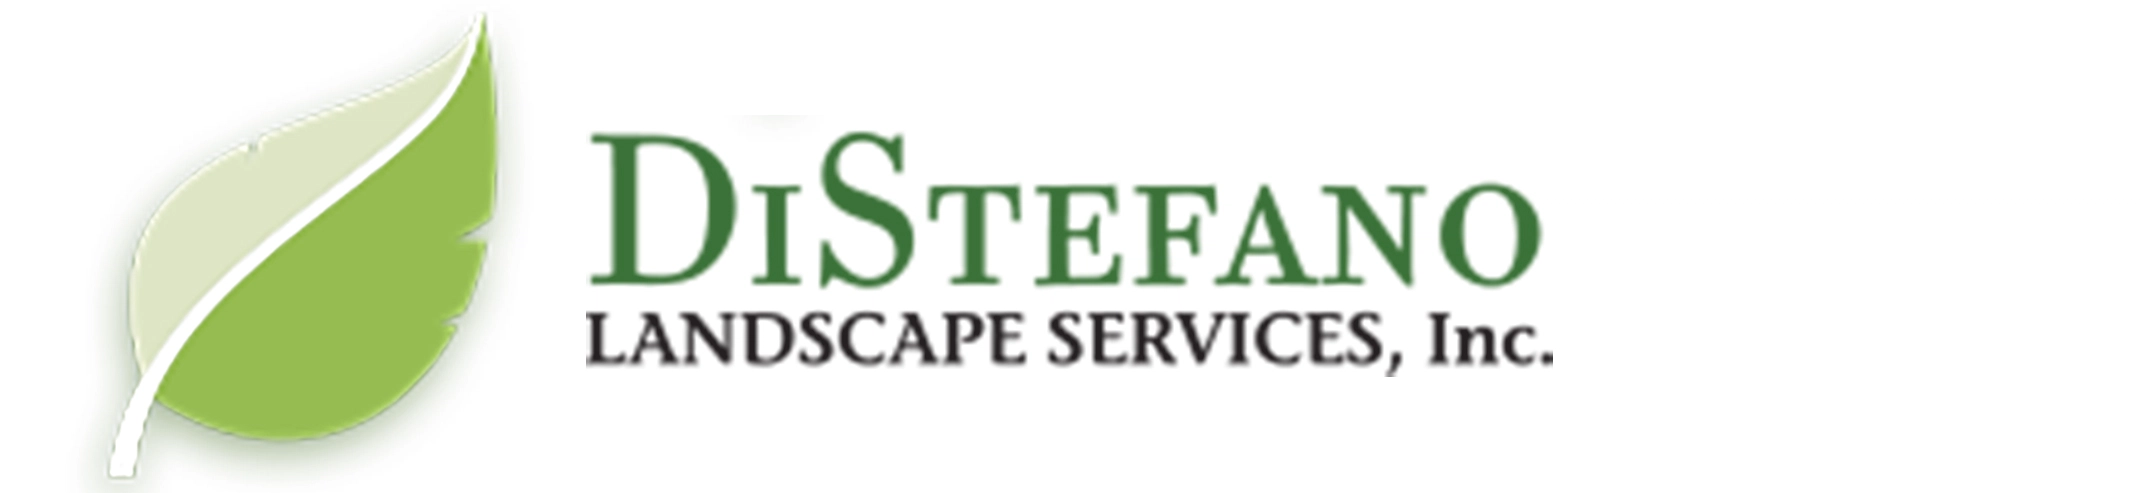 Di Stefano Landscape Services Inc. Logo